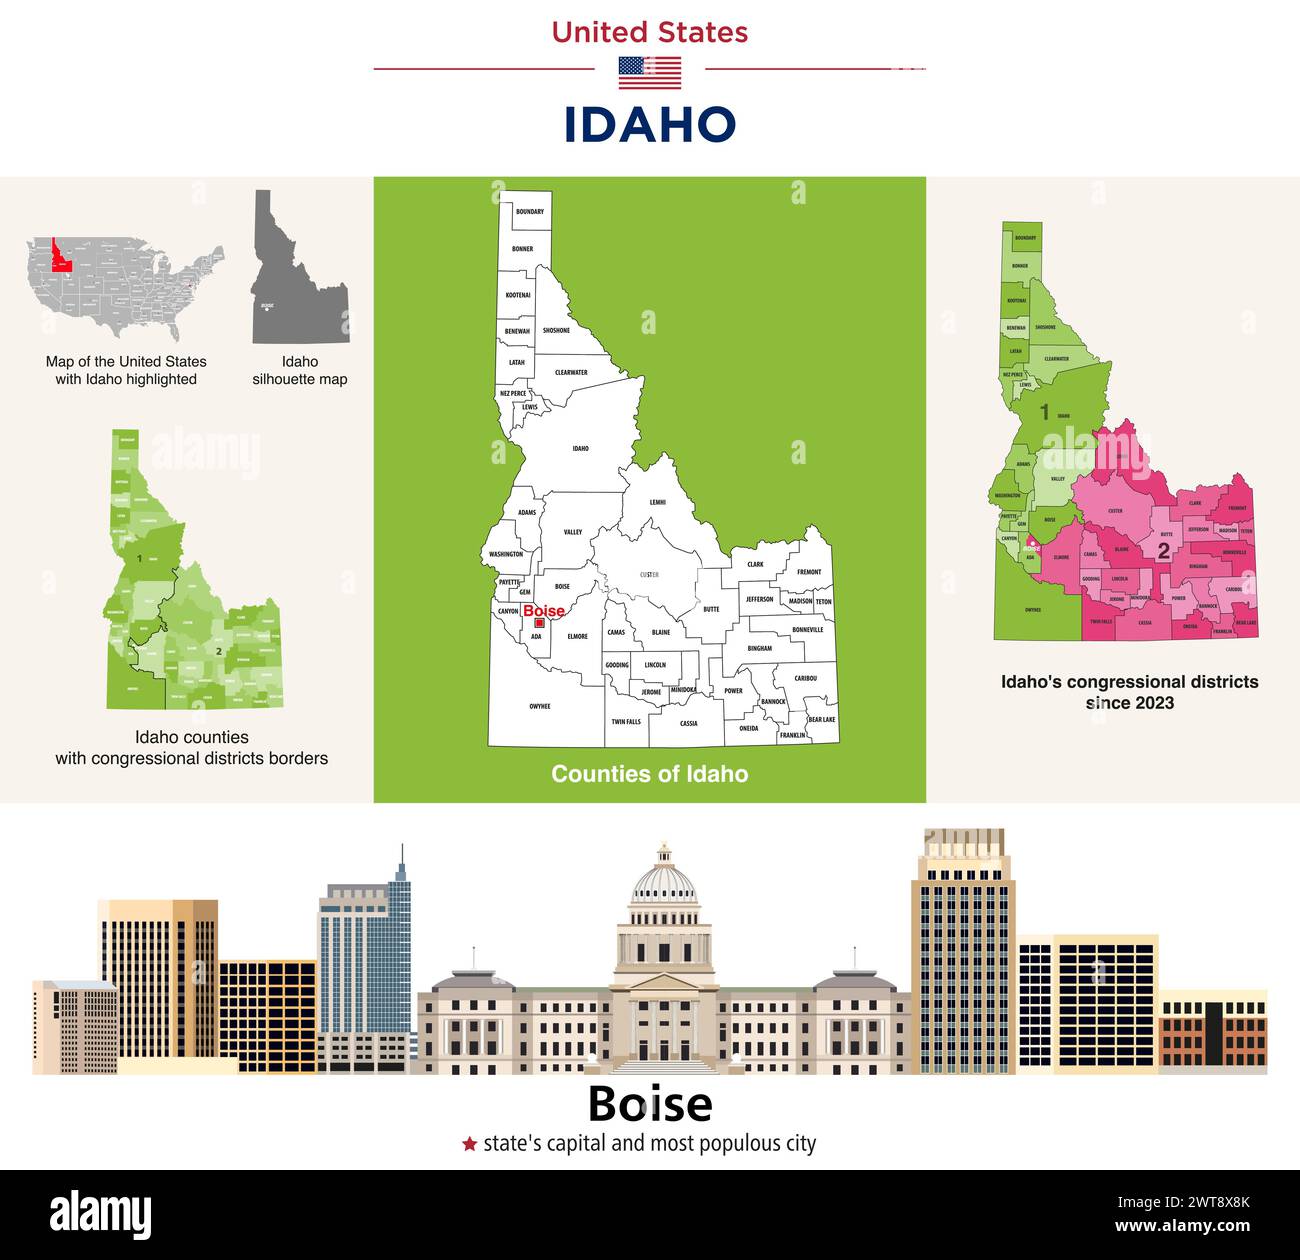 Idaho Countys Karte und Kongressbezirke seit 2023 Karte. Skyline von Boise – Hauptstadt des Bundesstaates und bevölkerungsreichste Stadt. Vektorsatz Stock Vektor